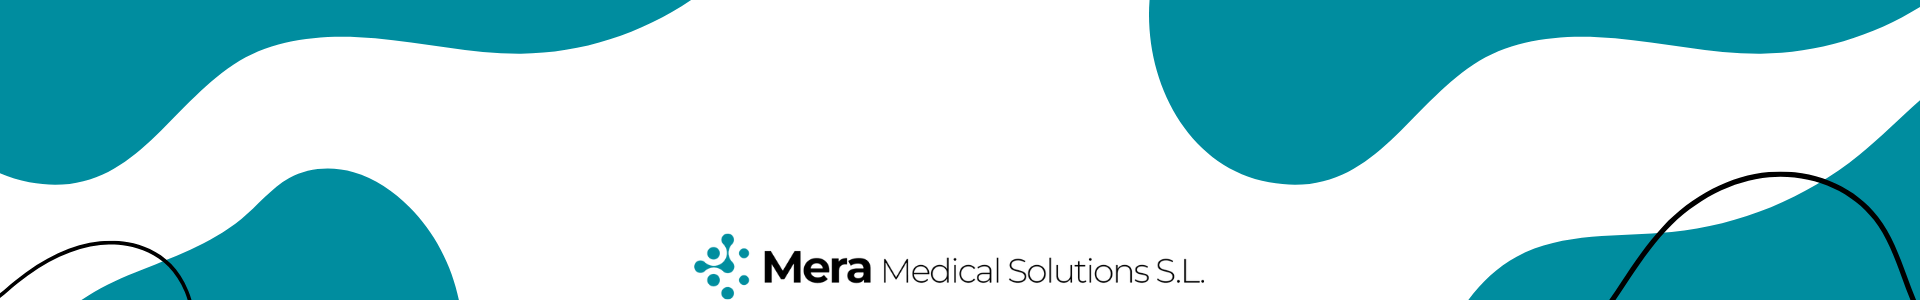 Marca MERA Medical Solutions